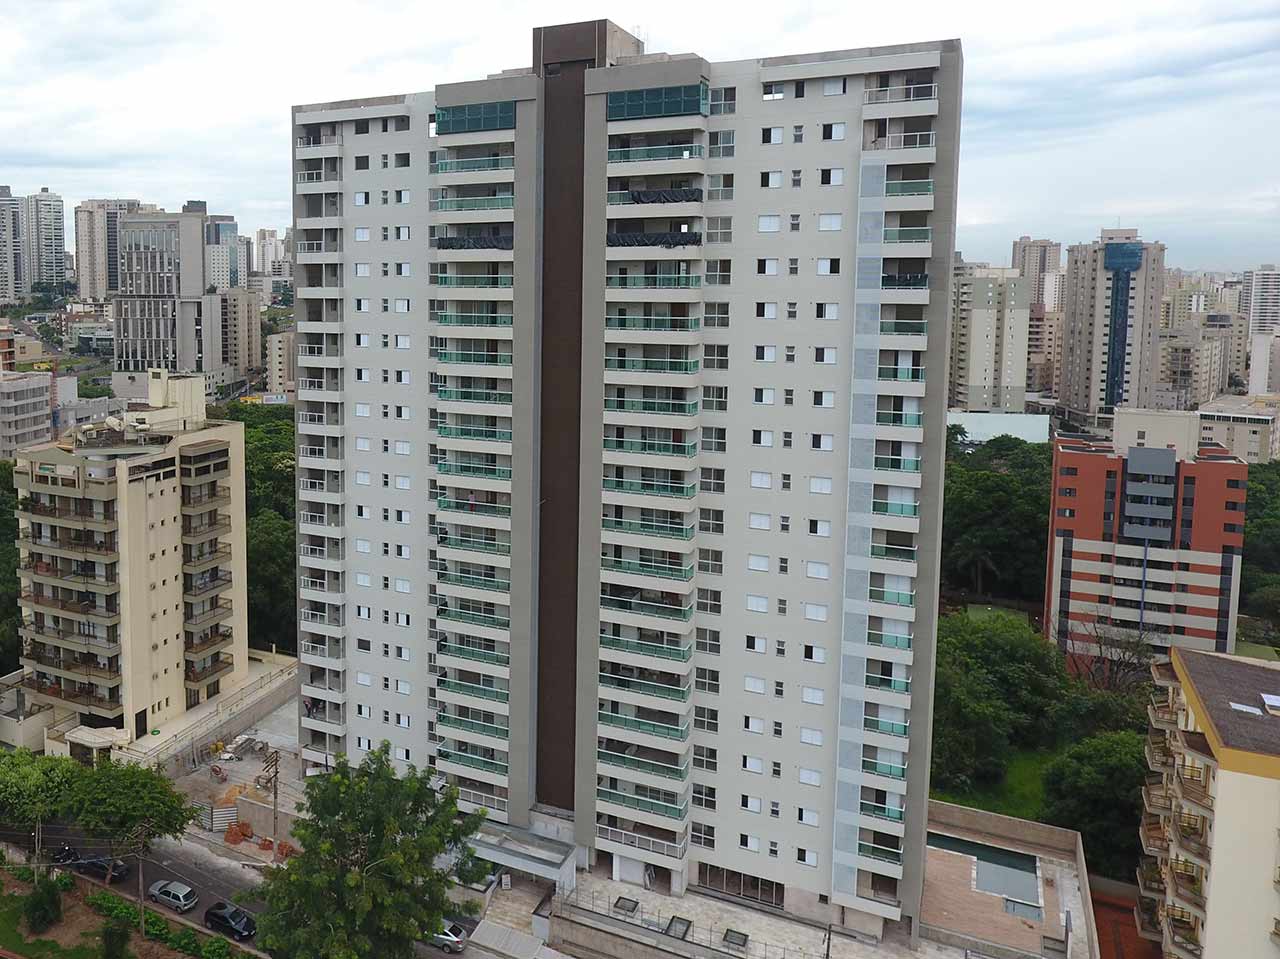 Edifício Grandview - Ribeirão Preto - A ibratex Pintou